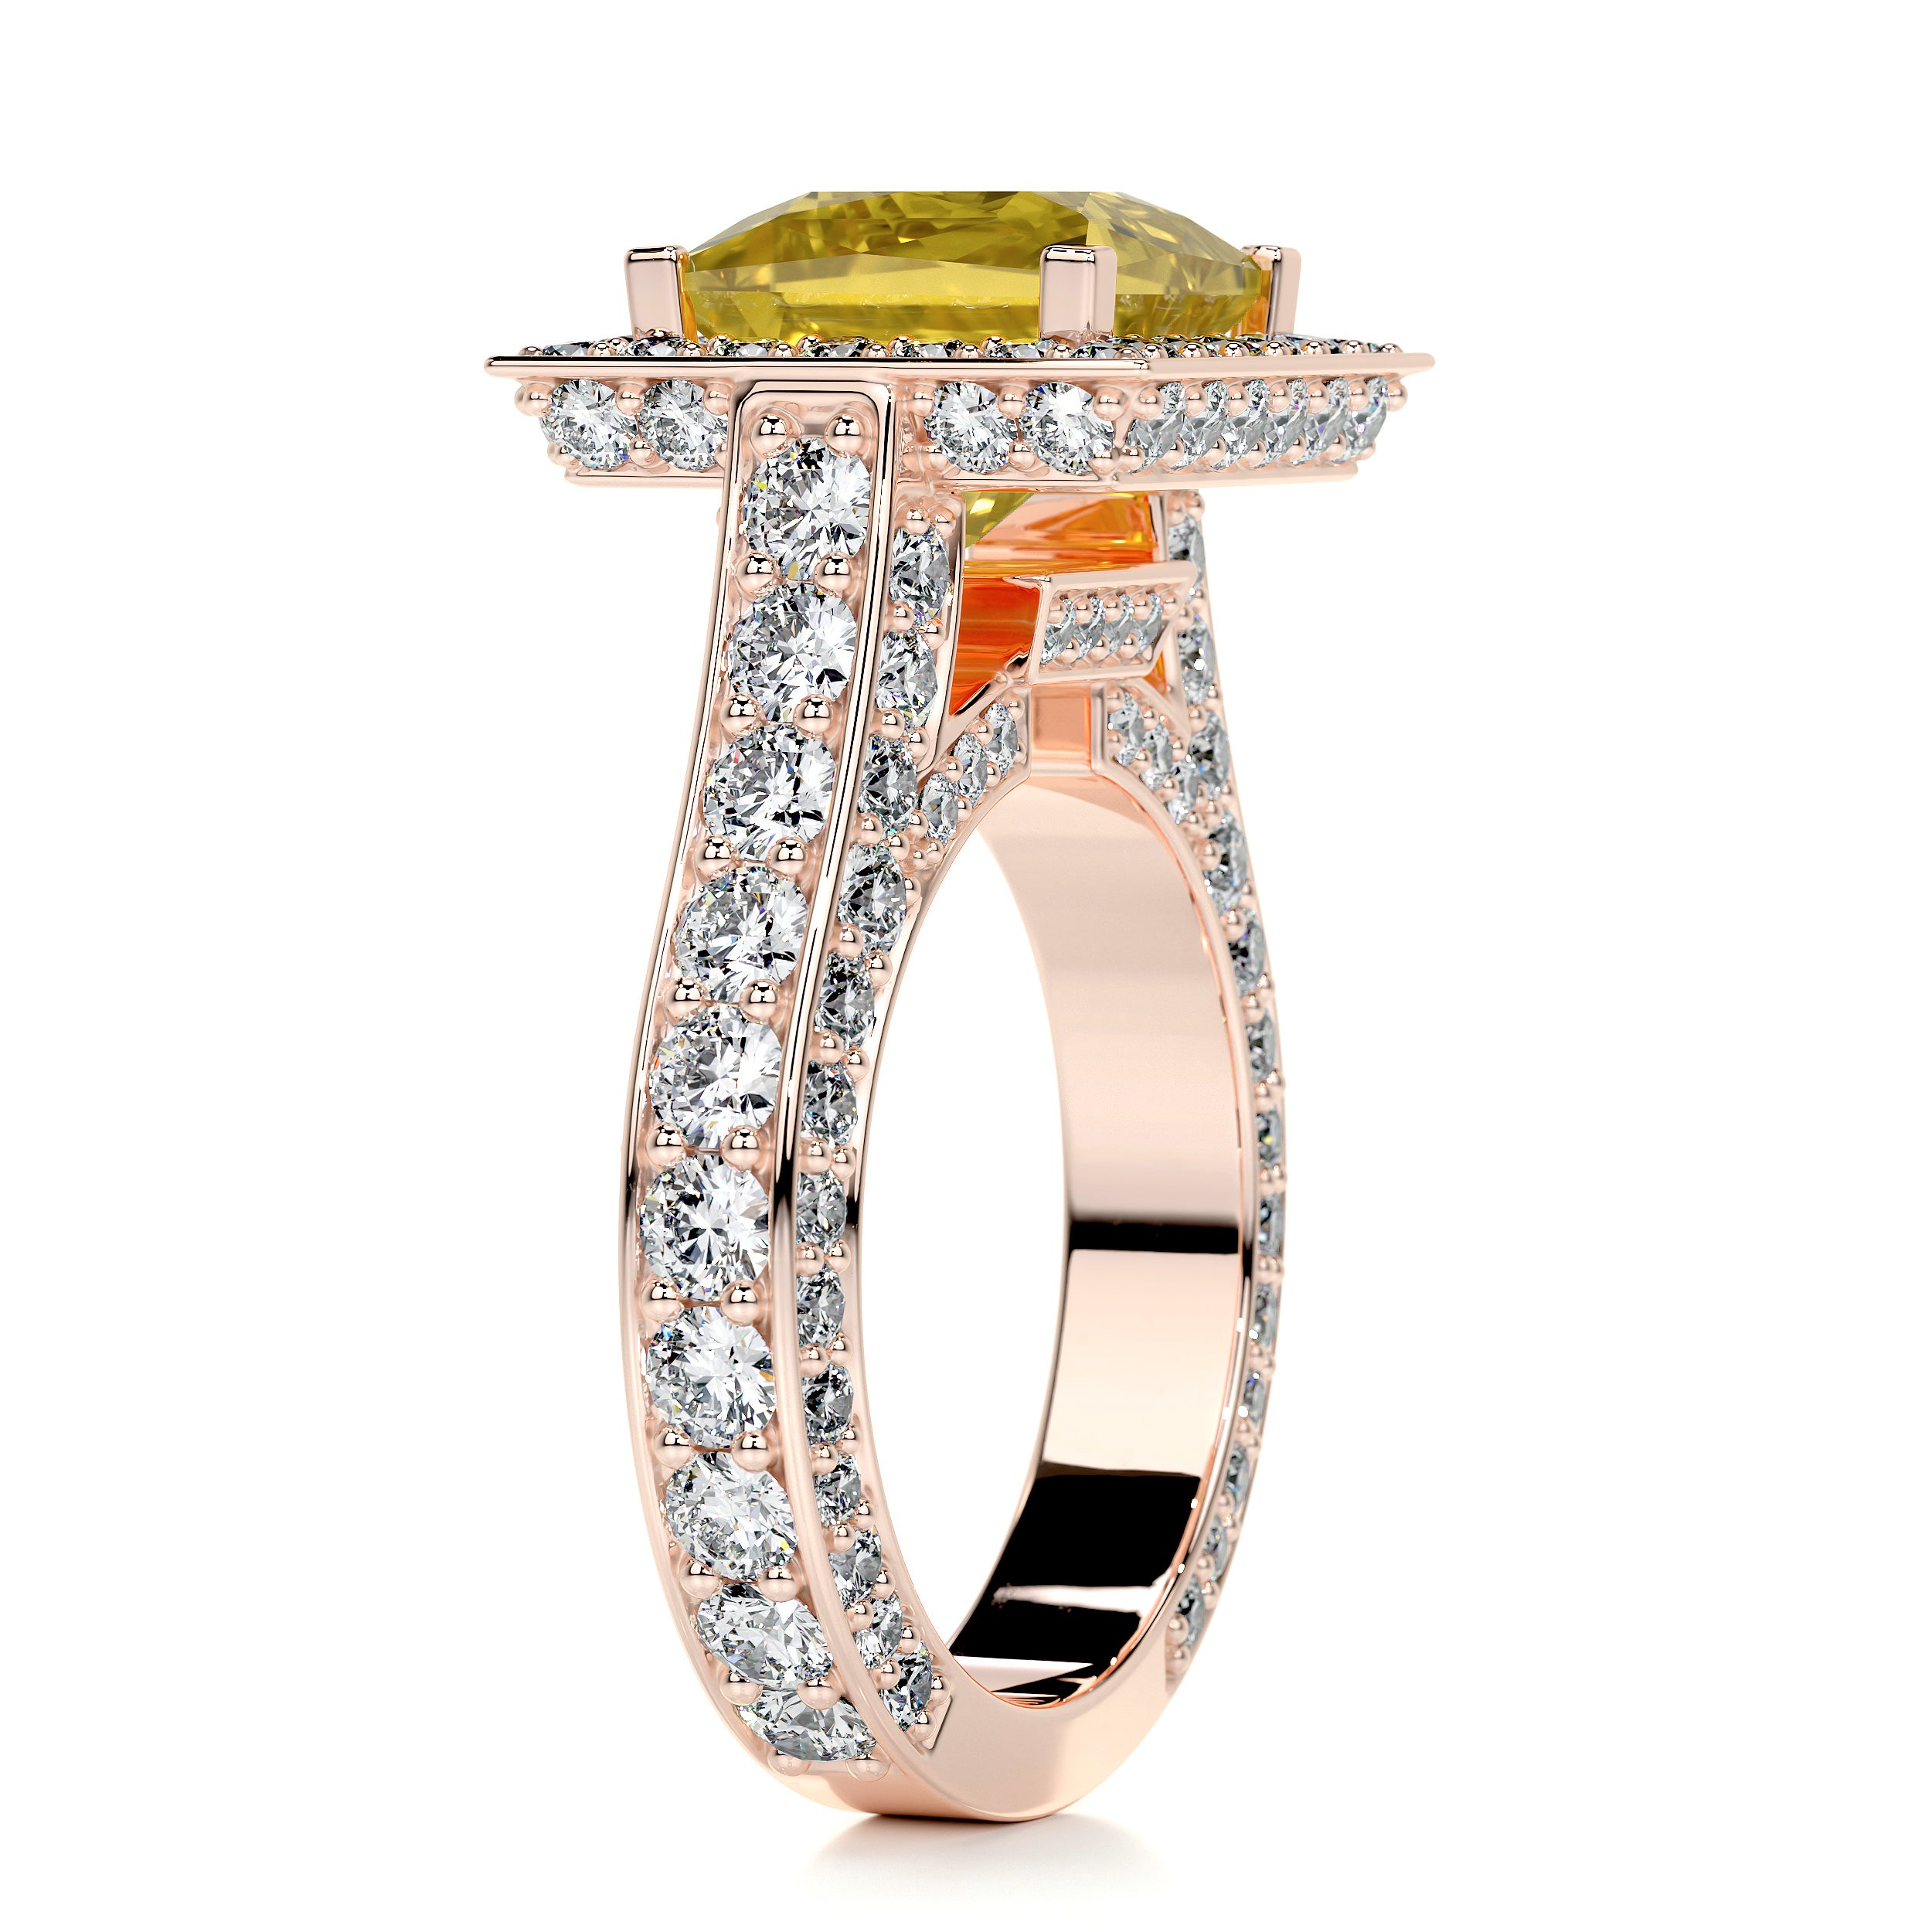 Freya Diamond Engagement Ring -14K Rose Gold